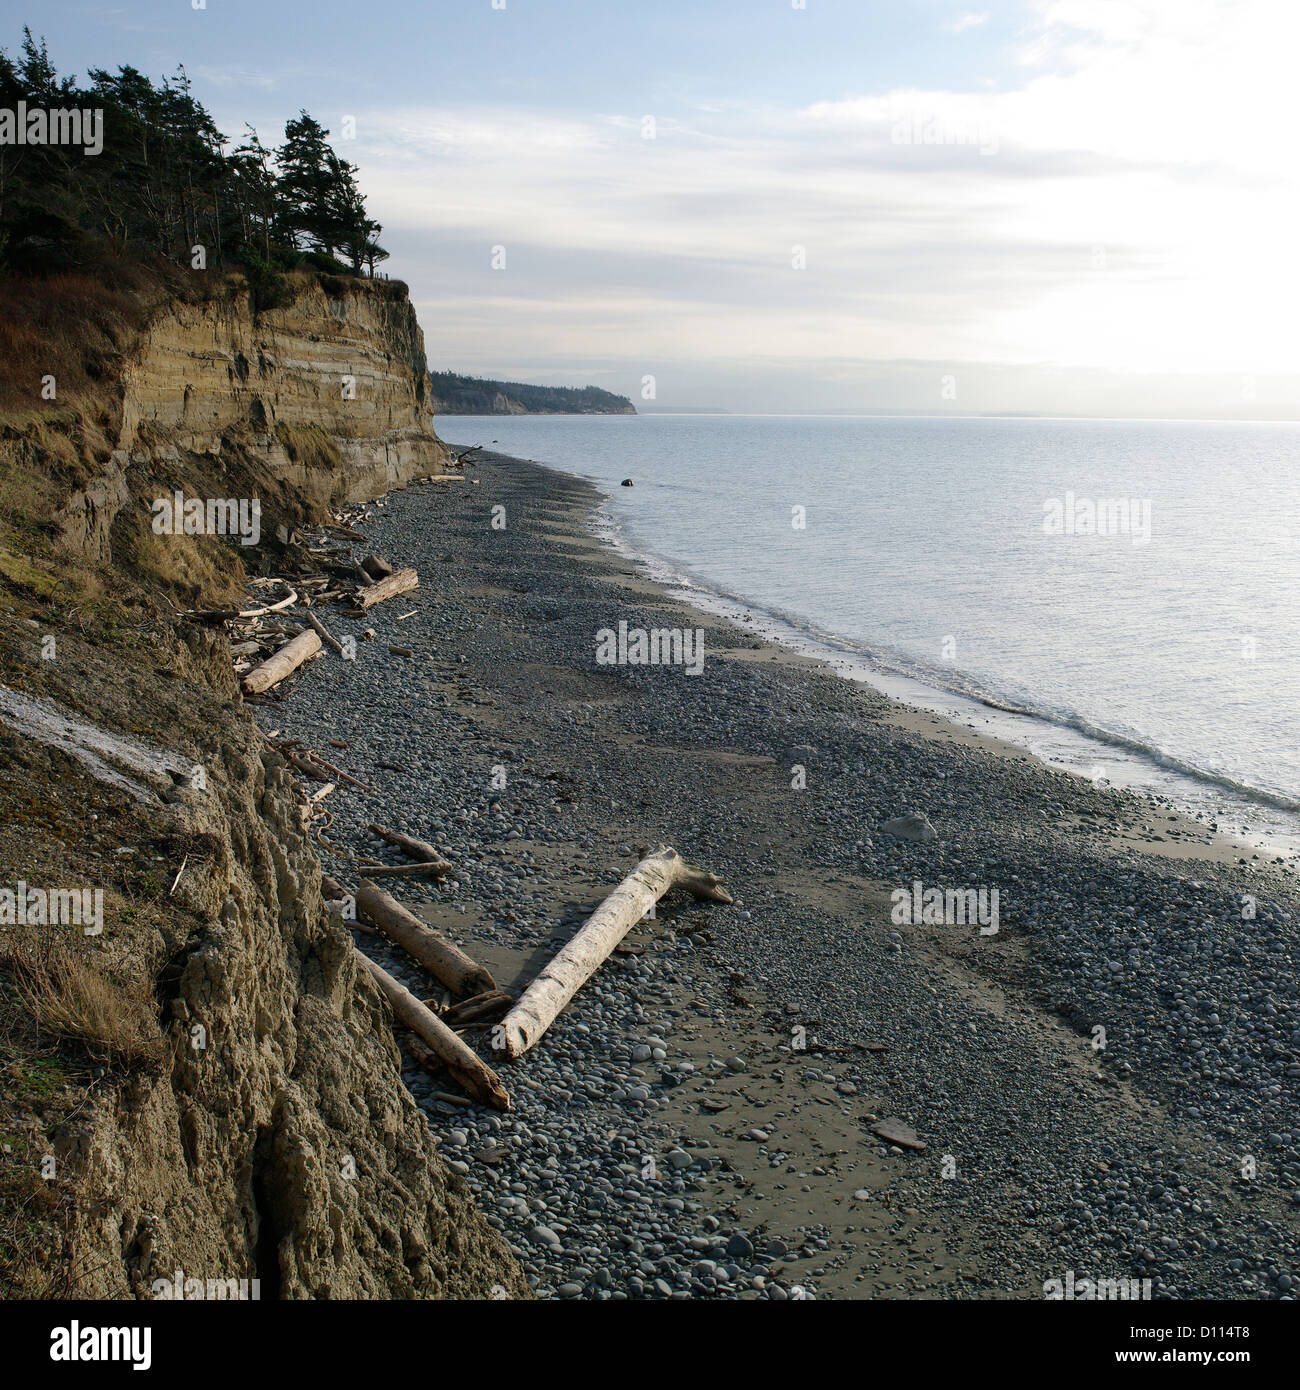 Le rivage de la plage de l'Ouest sur l'île de Whidbey, Washington, USA s'éloigne vers l'horizon dans un ciel ensoleillé en fin d'après-midi. Banque D'Images